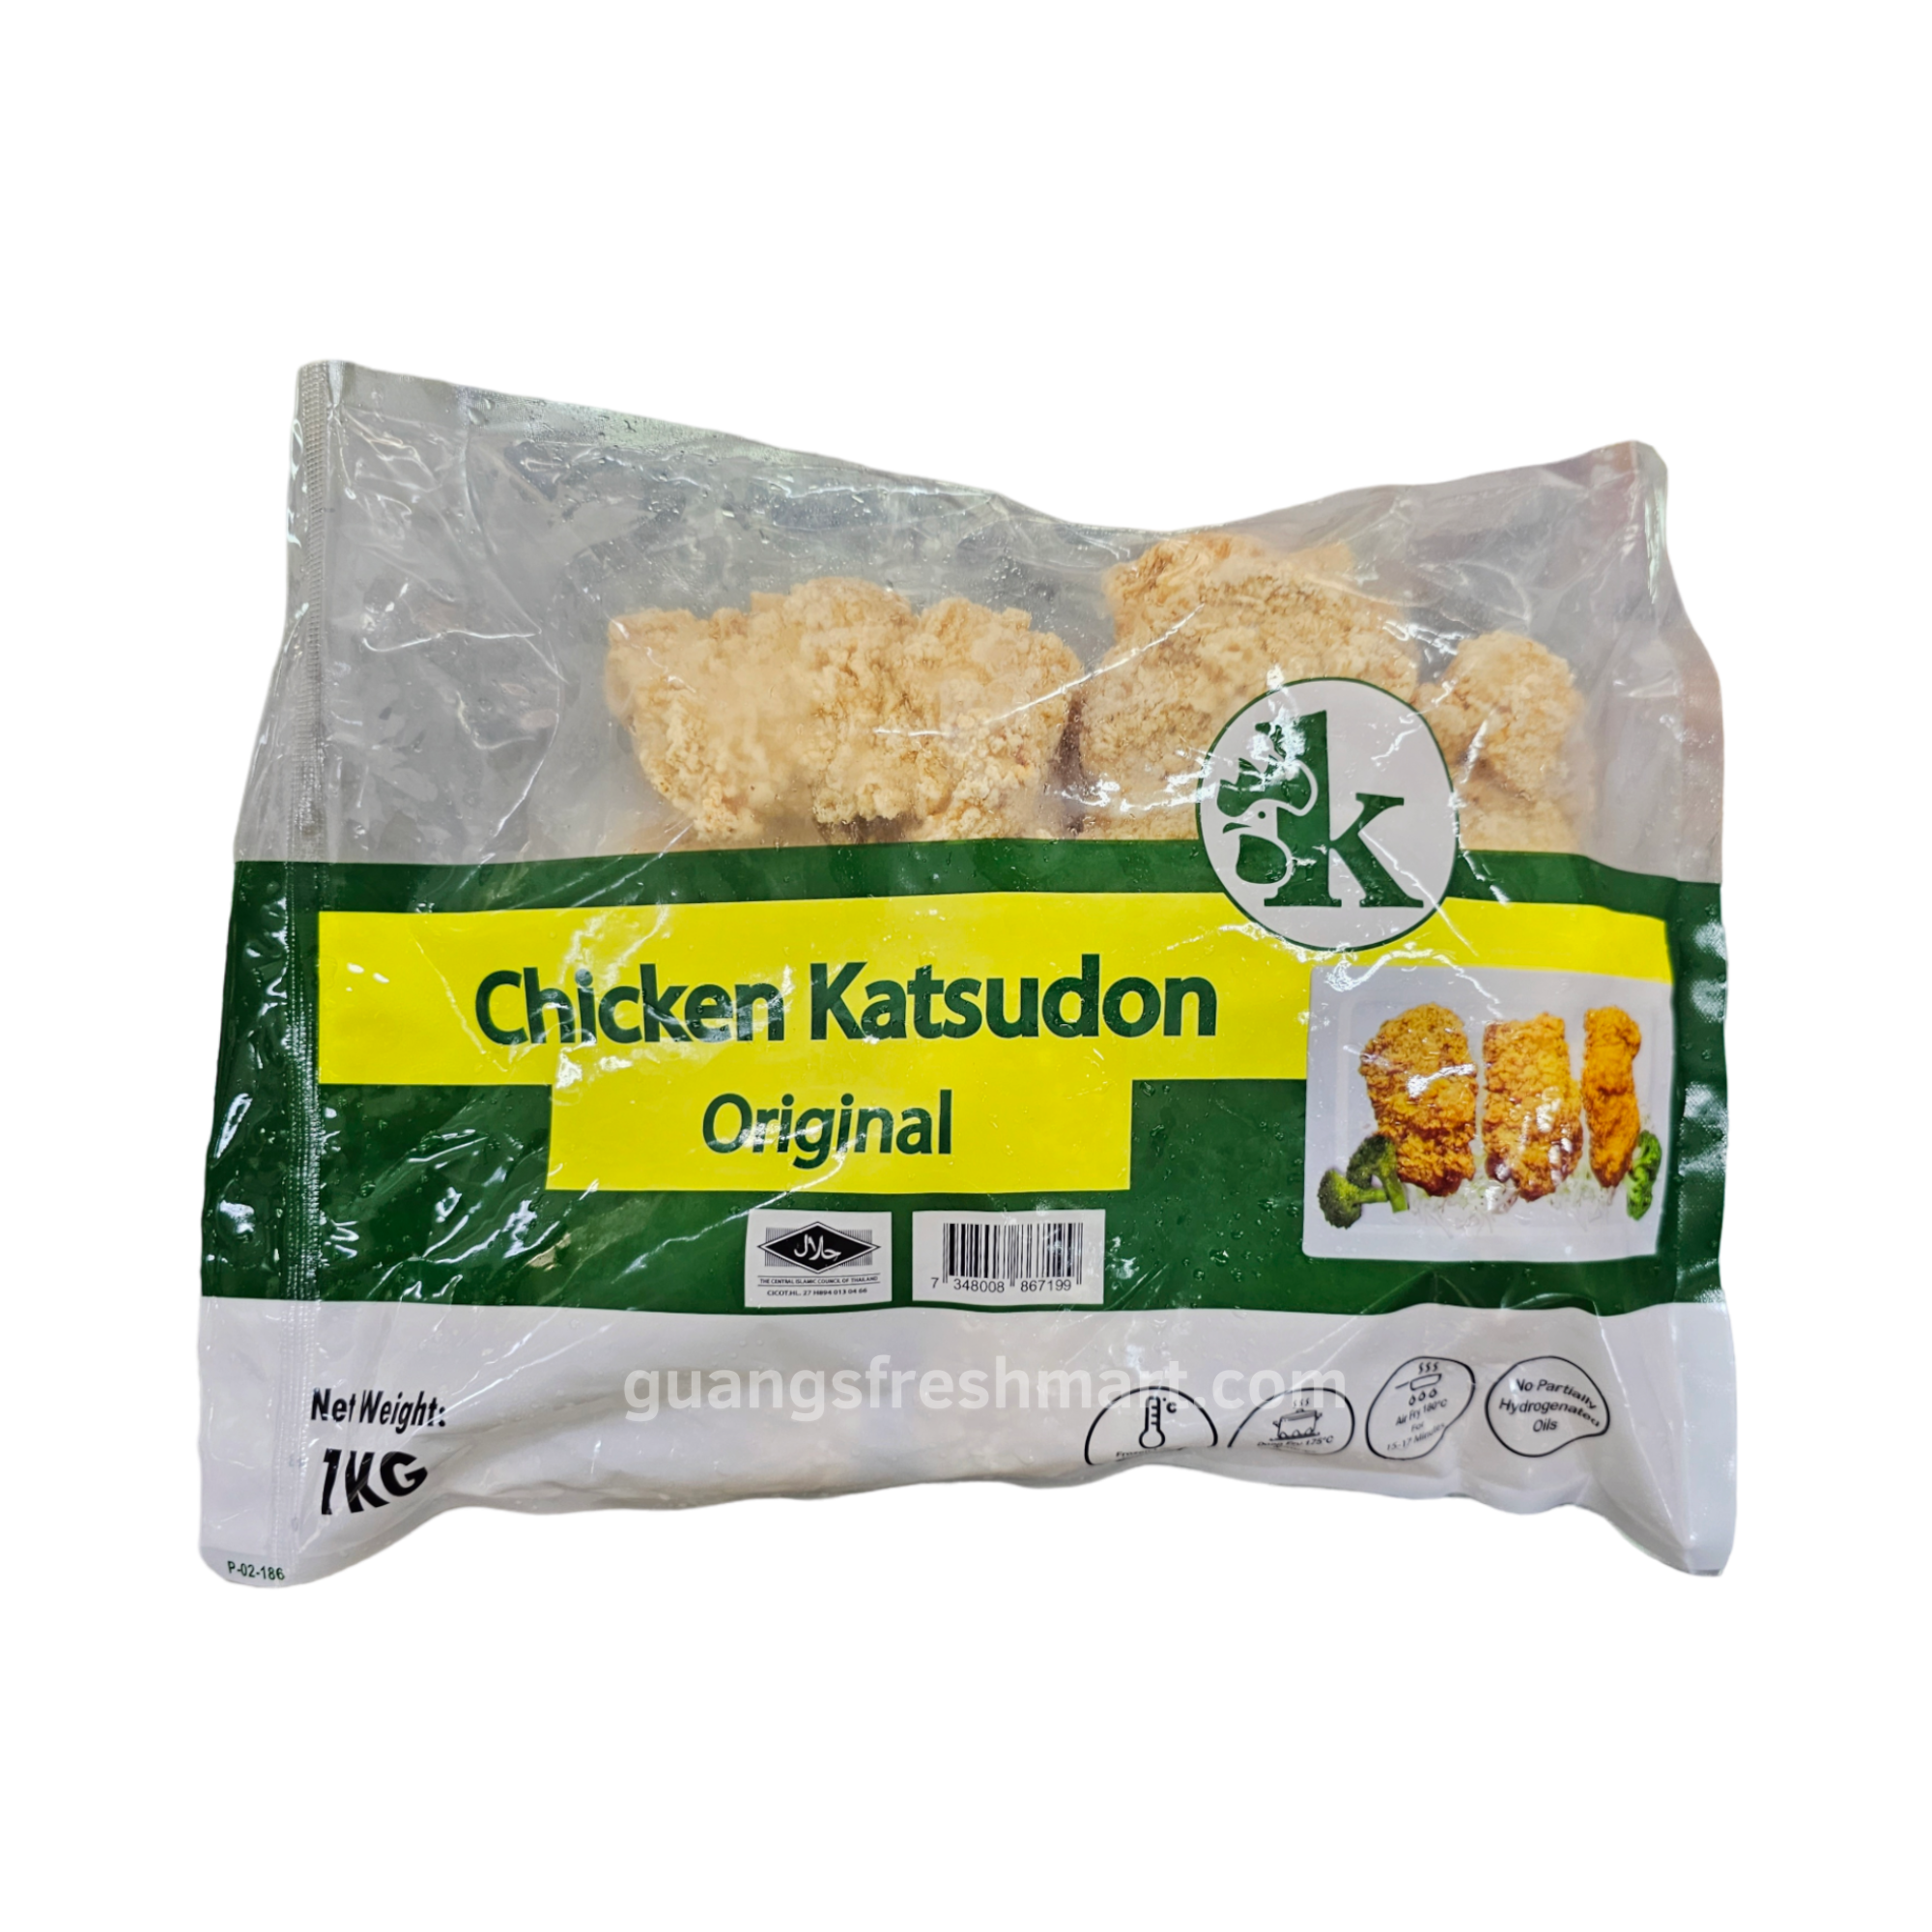 Original Chicken Katsudon (1kg)